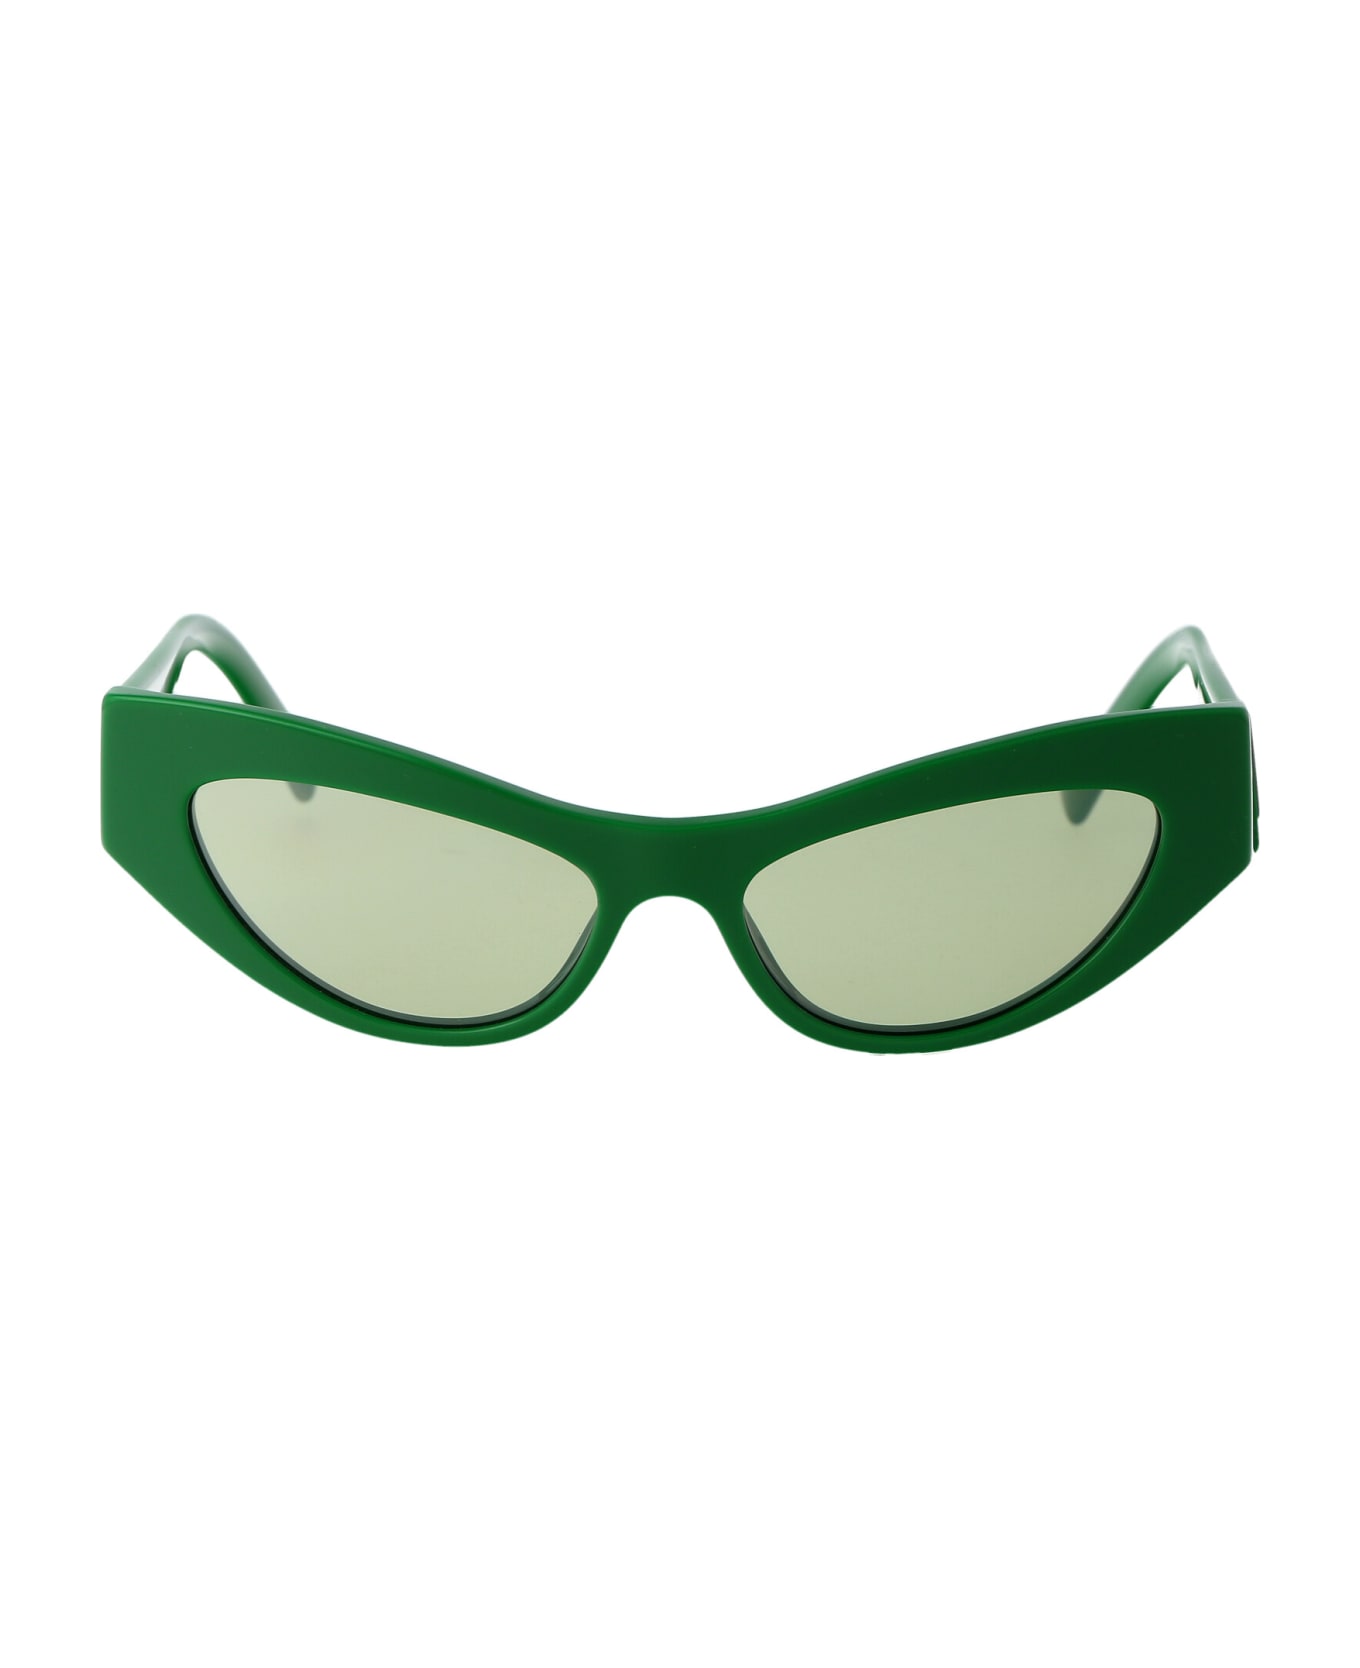 Dolce & Gabbana Eyewear 0dg4450 Sunglasses - 331152 Green